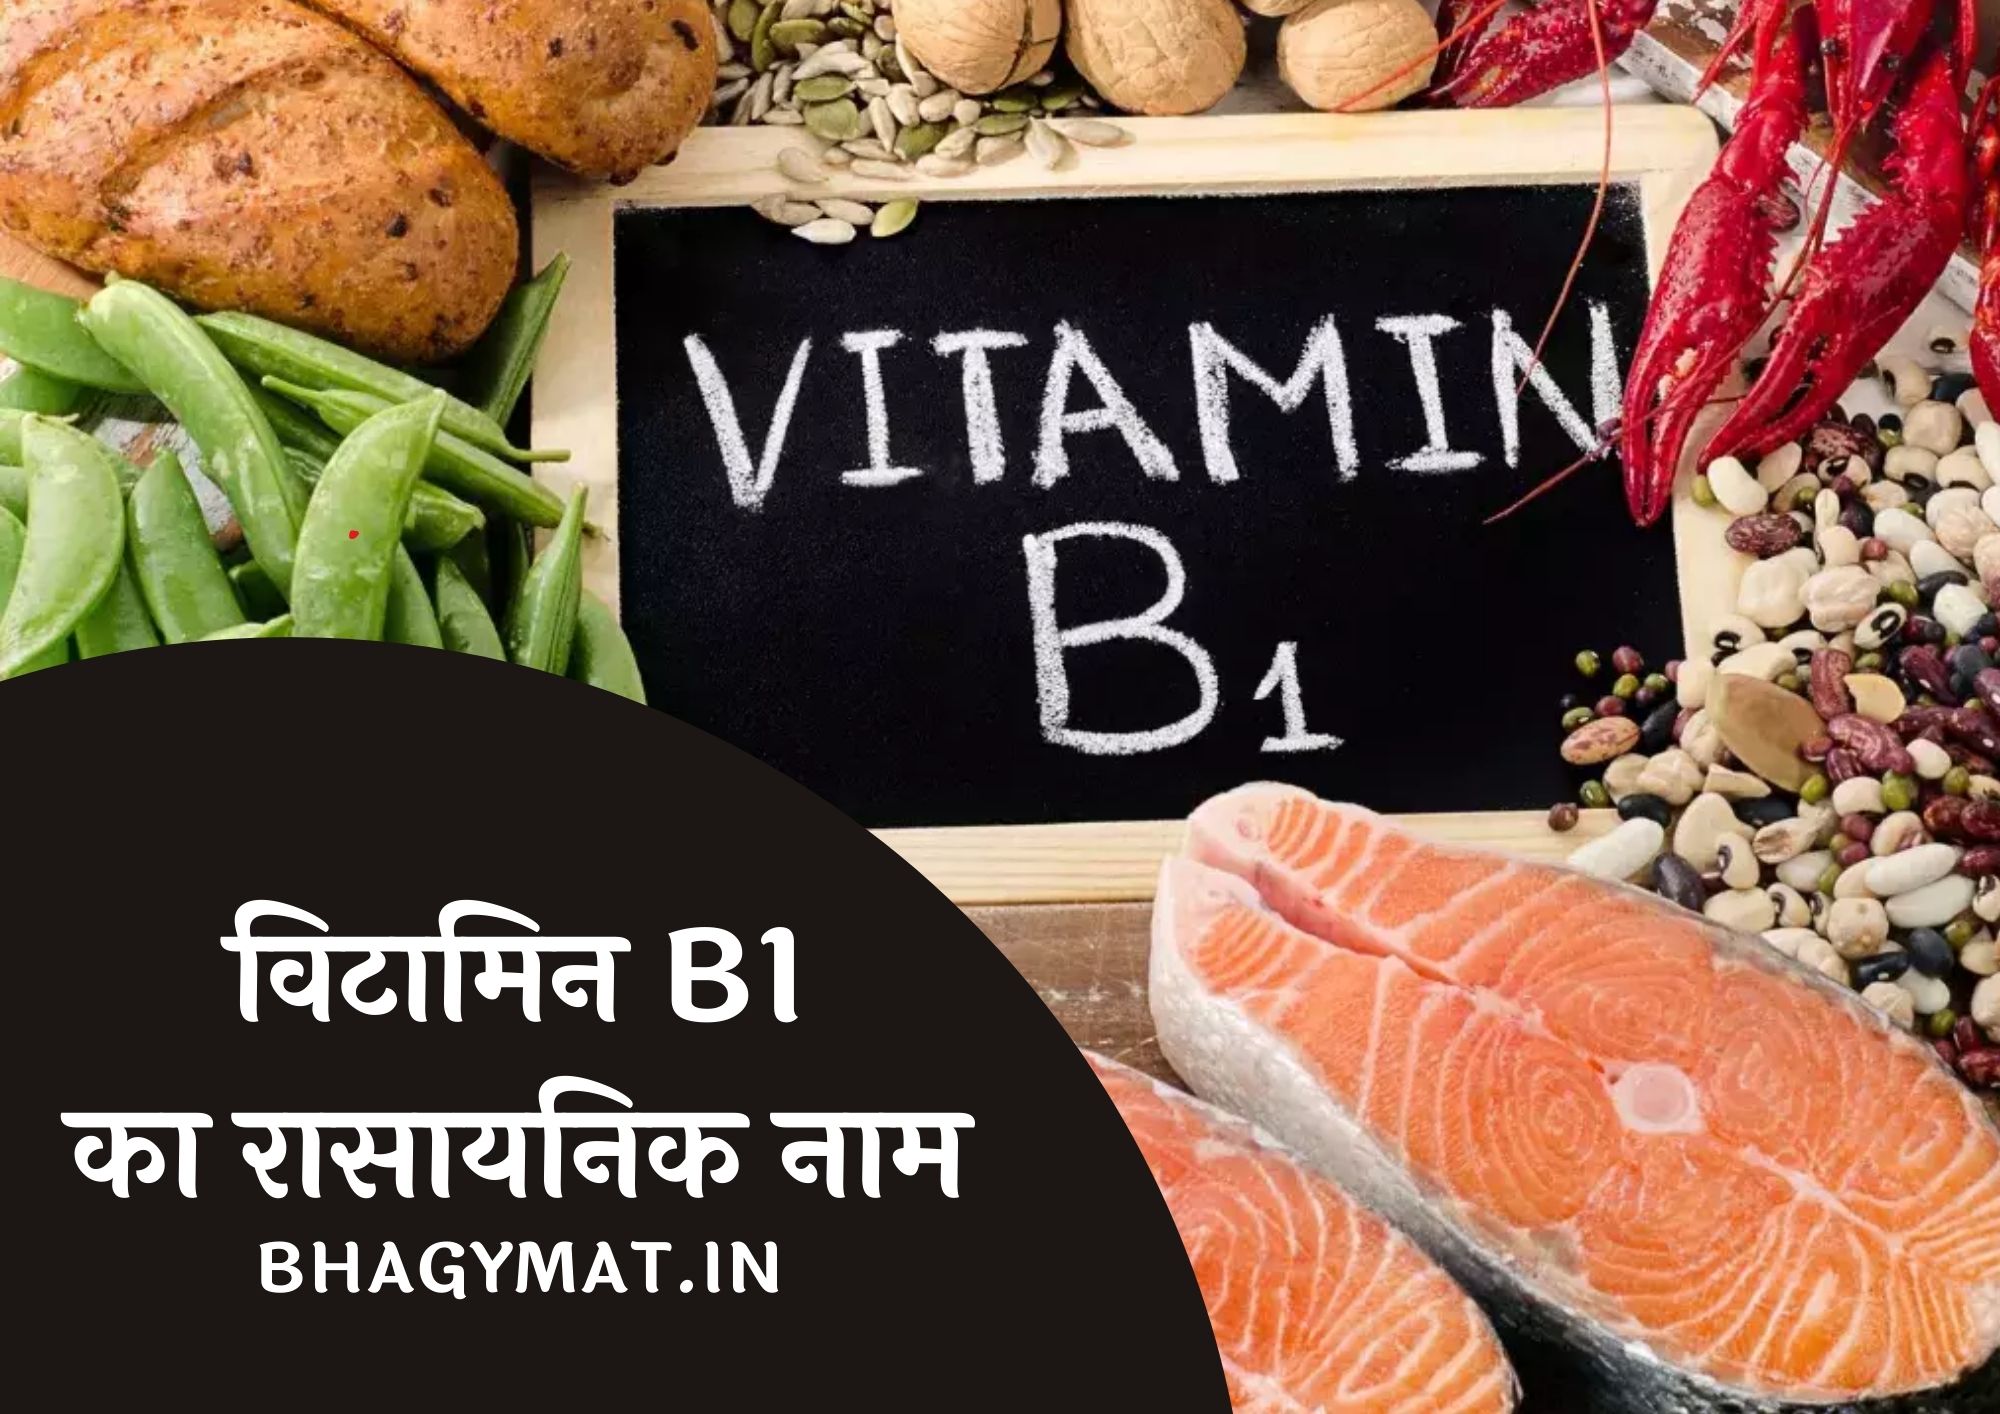 विटामिन B1 का रासायनिक नाम क्या है (Vitamin B1 Chemical Name In Hindi) - Vitamin B1 Ka Rasayanik Naam Kya Hai